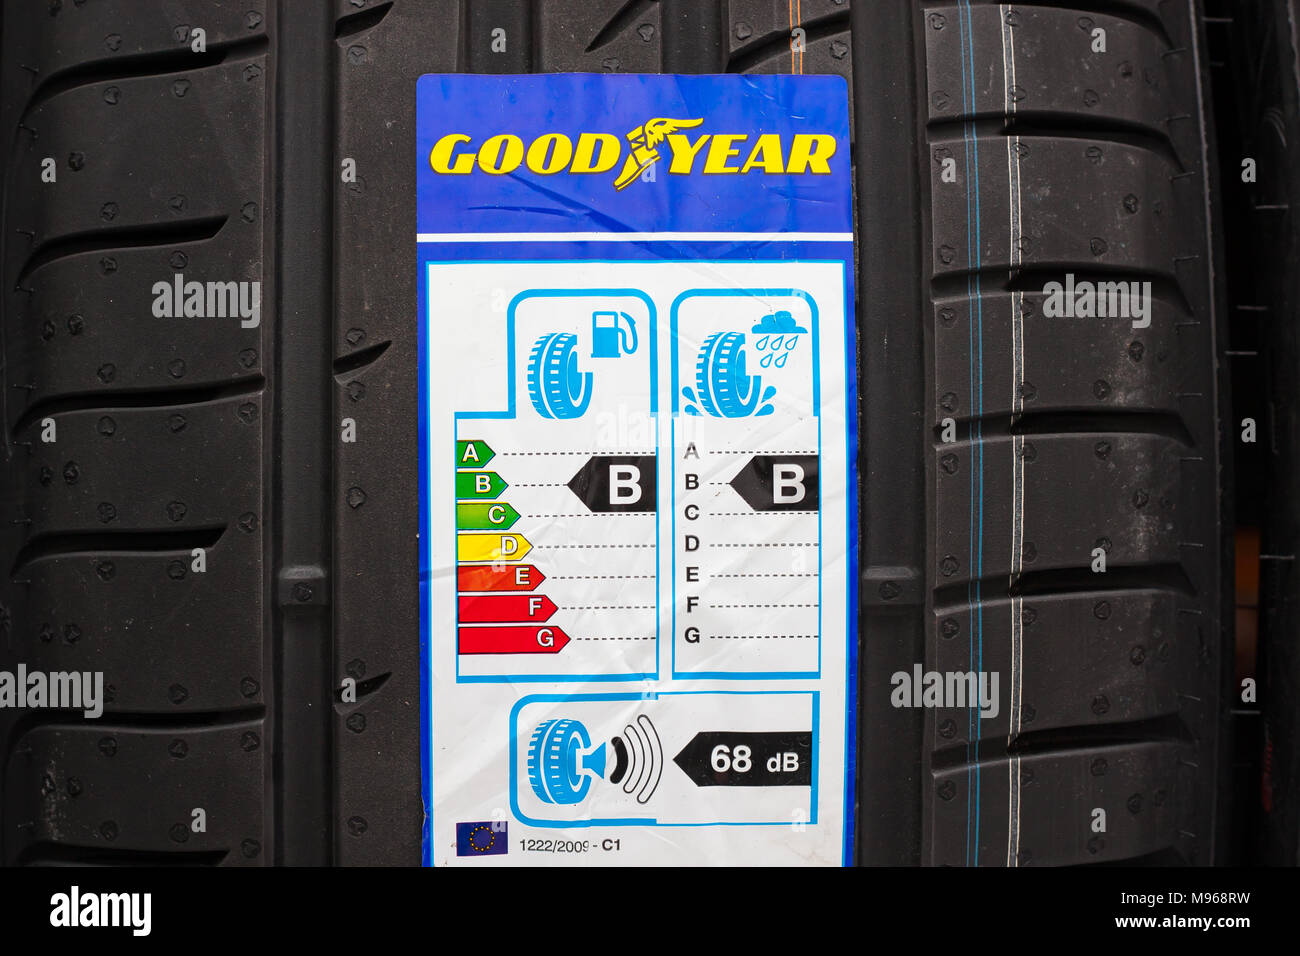 Tout nouveau pneu Goodyear avec étiquette avec l'information sur la sécurité, l'économie de carburant et le bruit externe. Utilisez uniquement éditoriale Banque D'Images